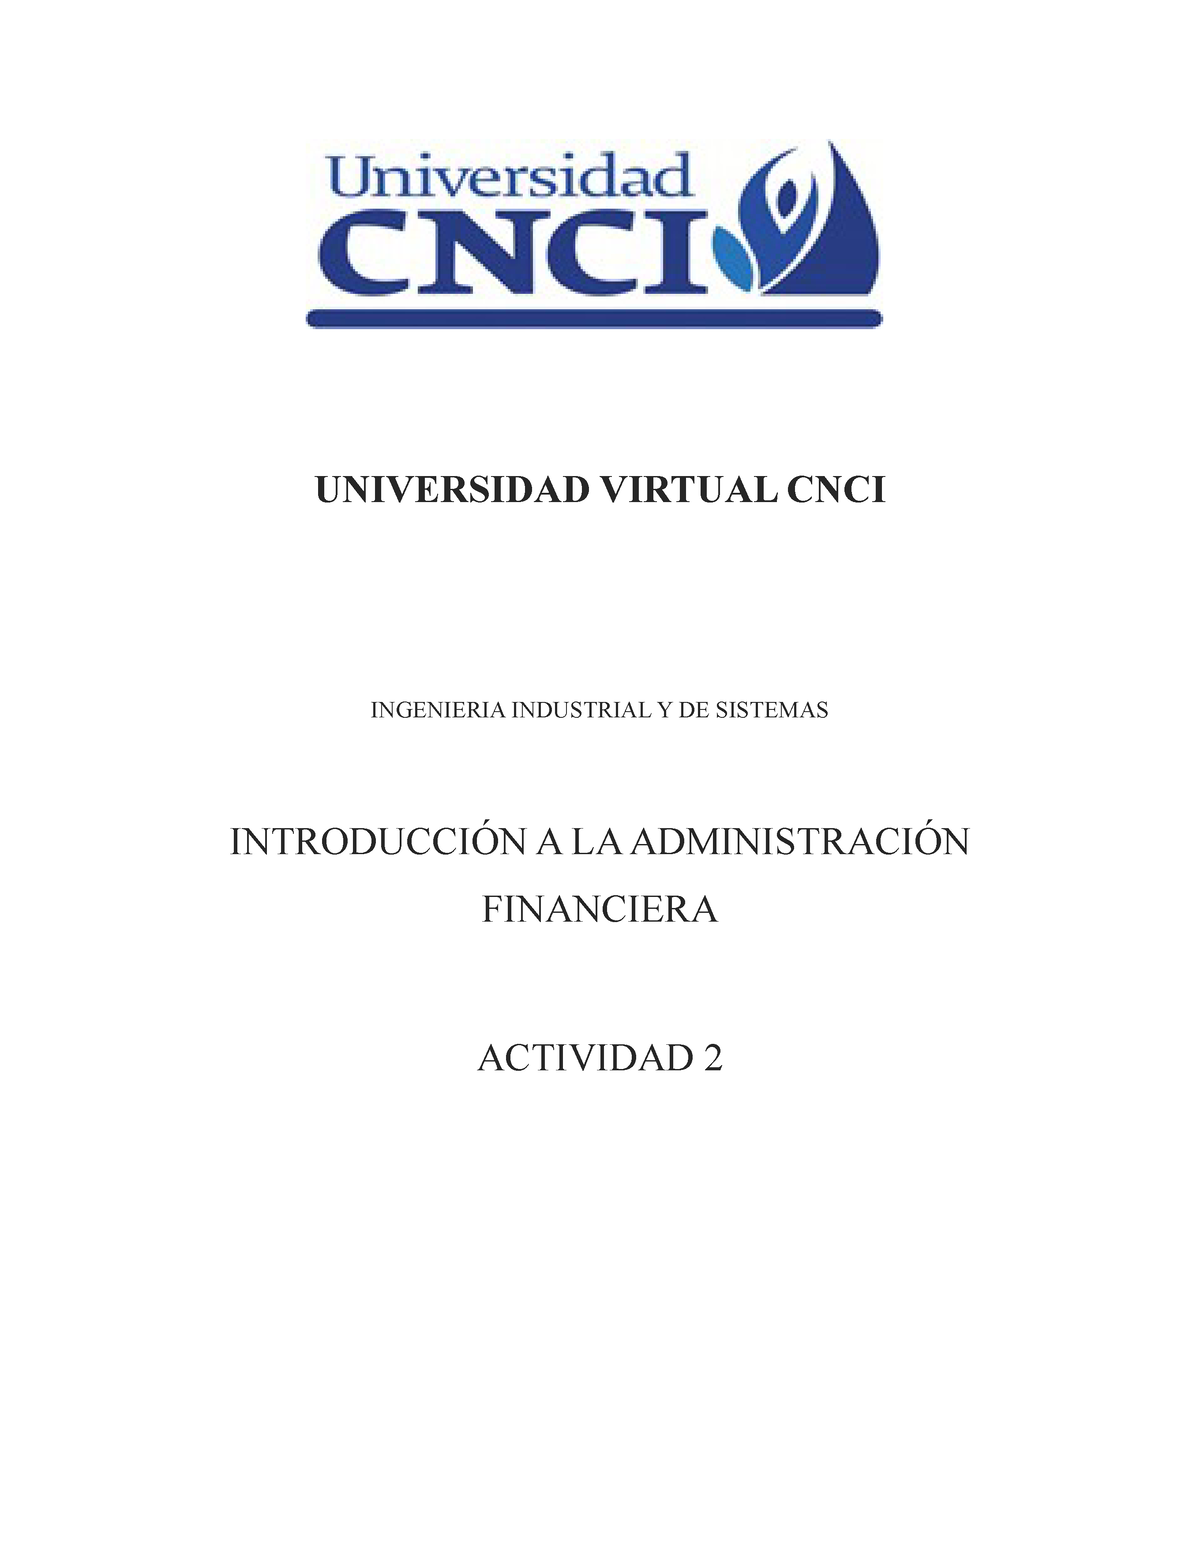 Actividad 2 Introducción A La Administración Financiera Universidad Virtual Cnci Ingenieria 6423